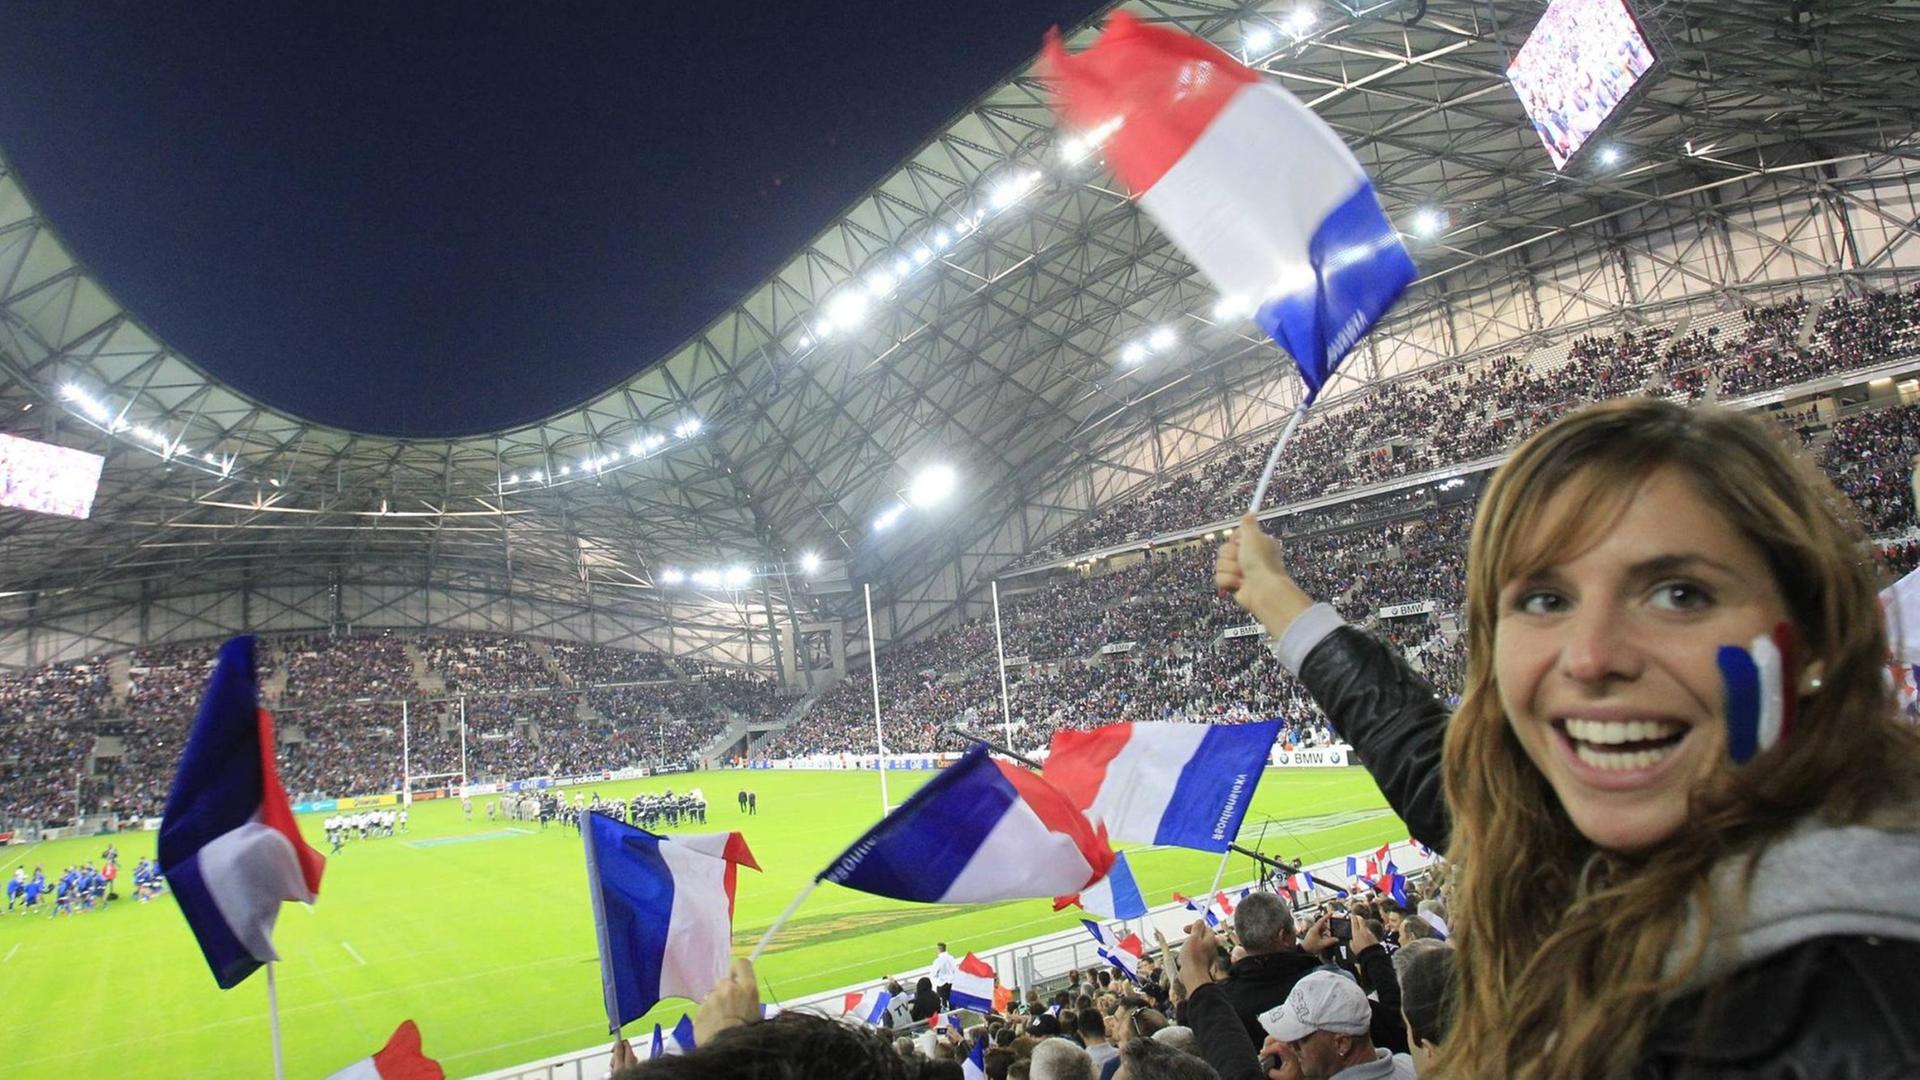 Blick in ein Rugby-Stadion mit Fans, die französische Fähnchen schwenken, im Vordergrund